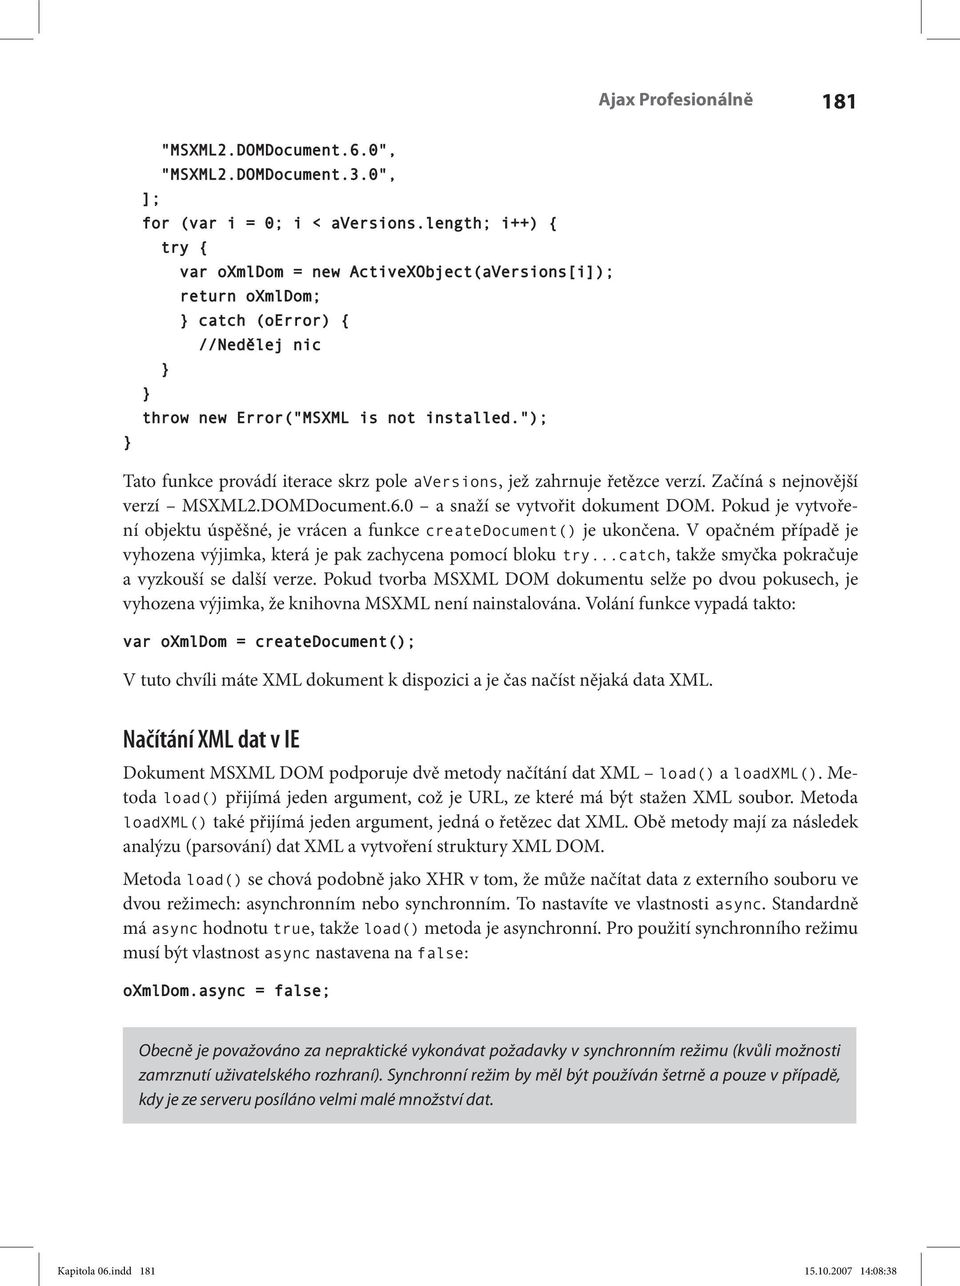 "); Tato funkce provádí iterace skrz pole aversions, jež zahrnuje řetězce verzí. Začíná s nejnovější verzí MSXML2.DOMDocument.6.0 a snaží se vytvořit dokument DOM.